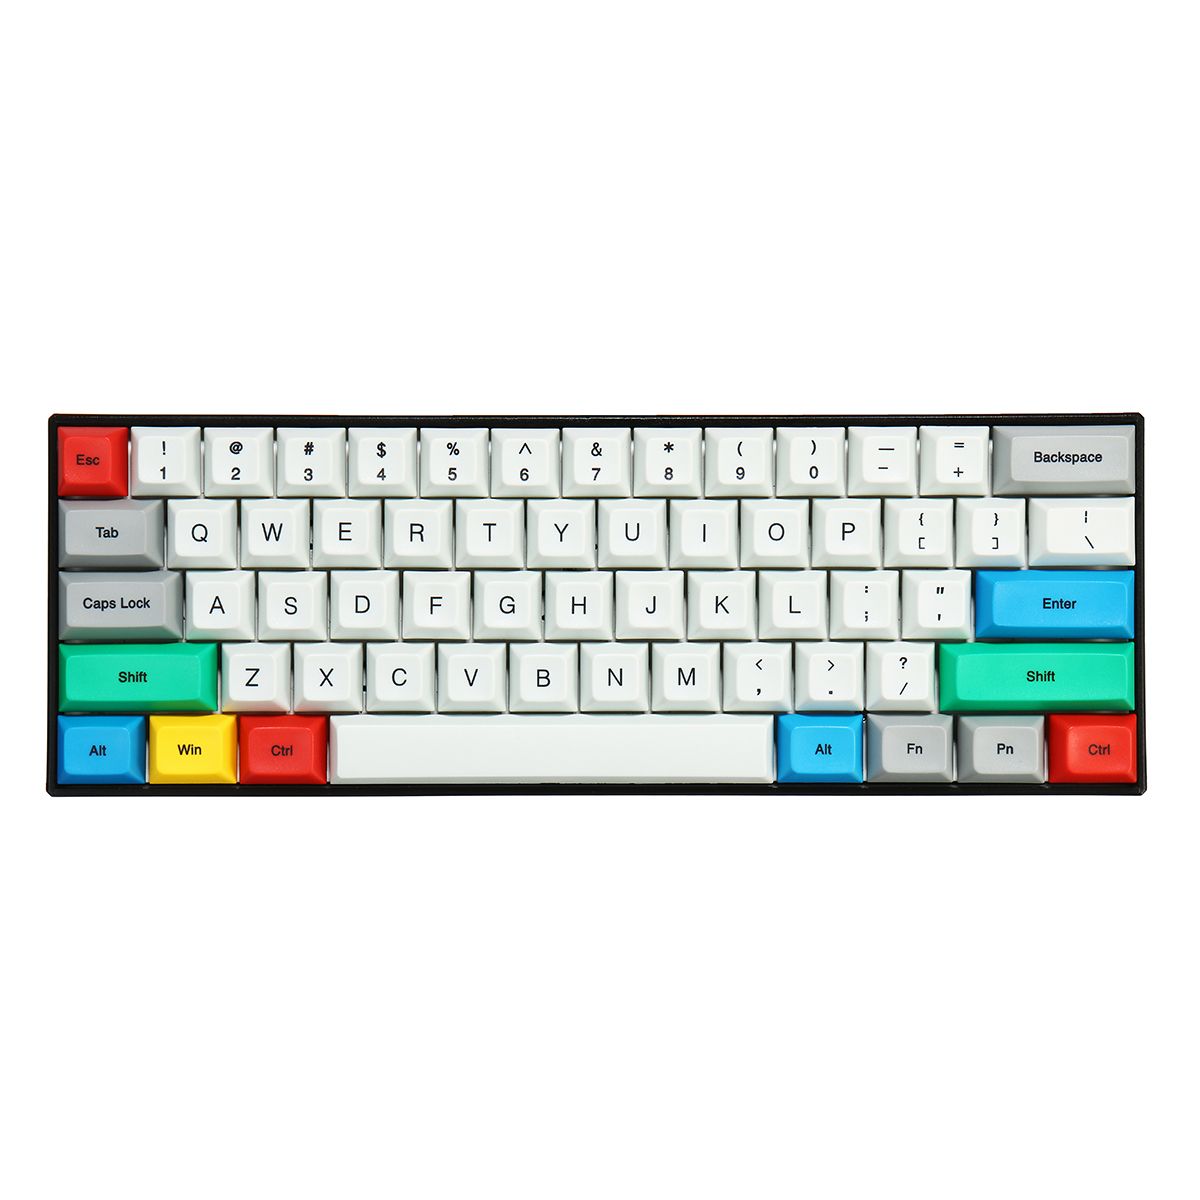 Feker-61104-Keys-D2-Keycap-Set-DSA-Profile-PBT-Sublimation-Keycaps-for-Mechanical-Keyboard-1626484